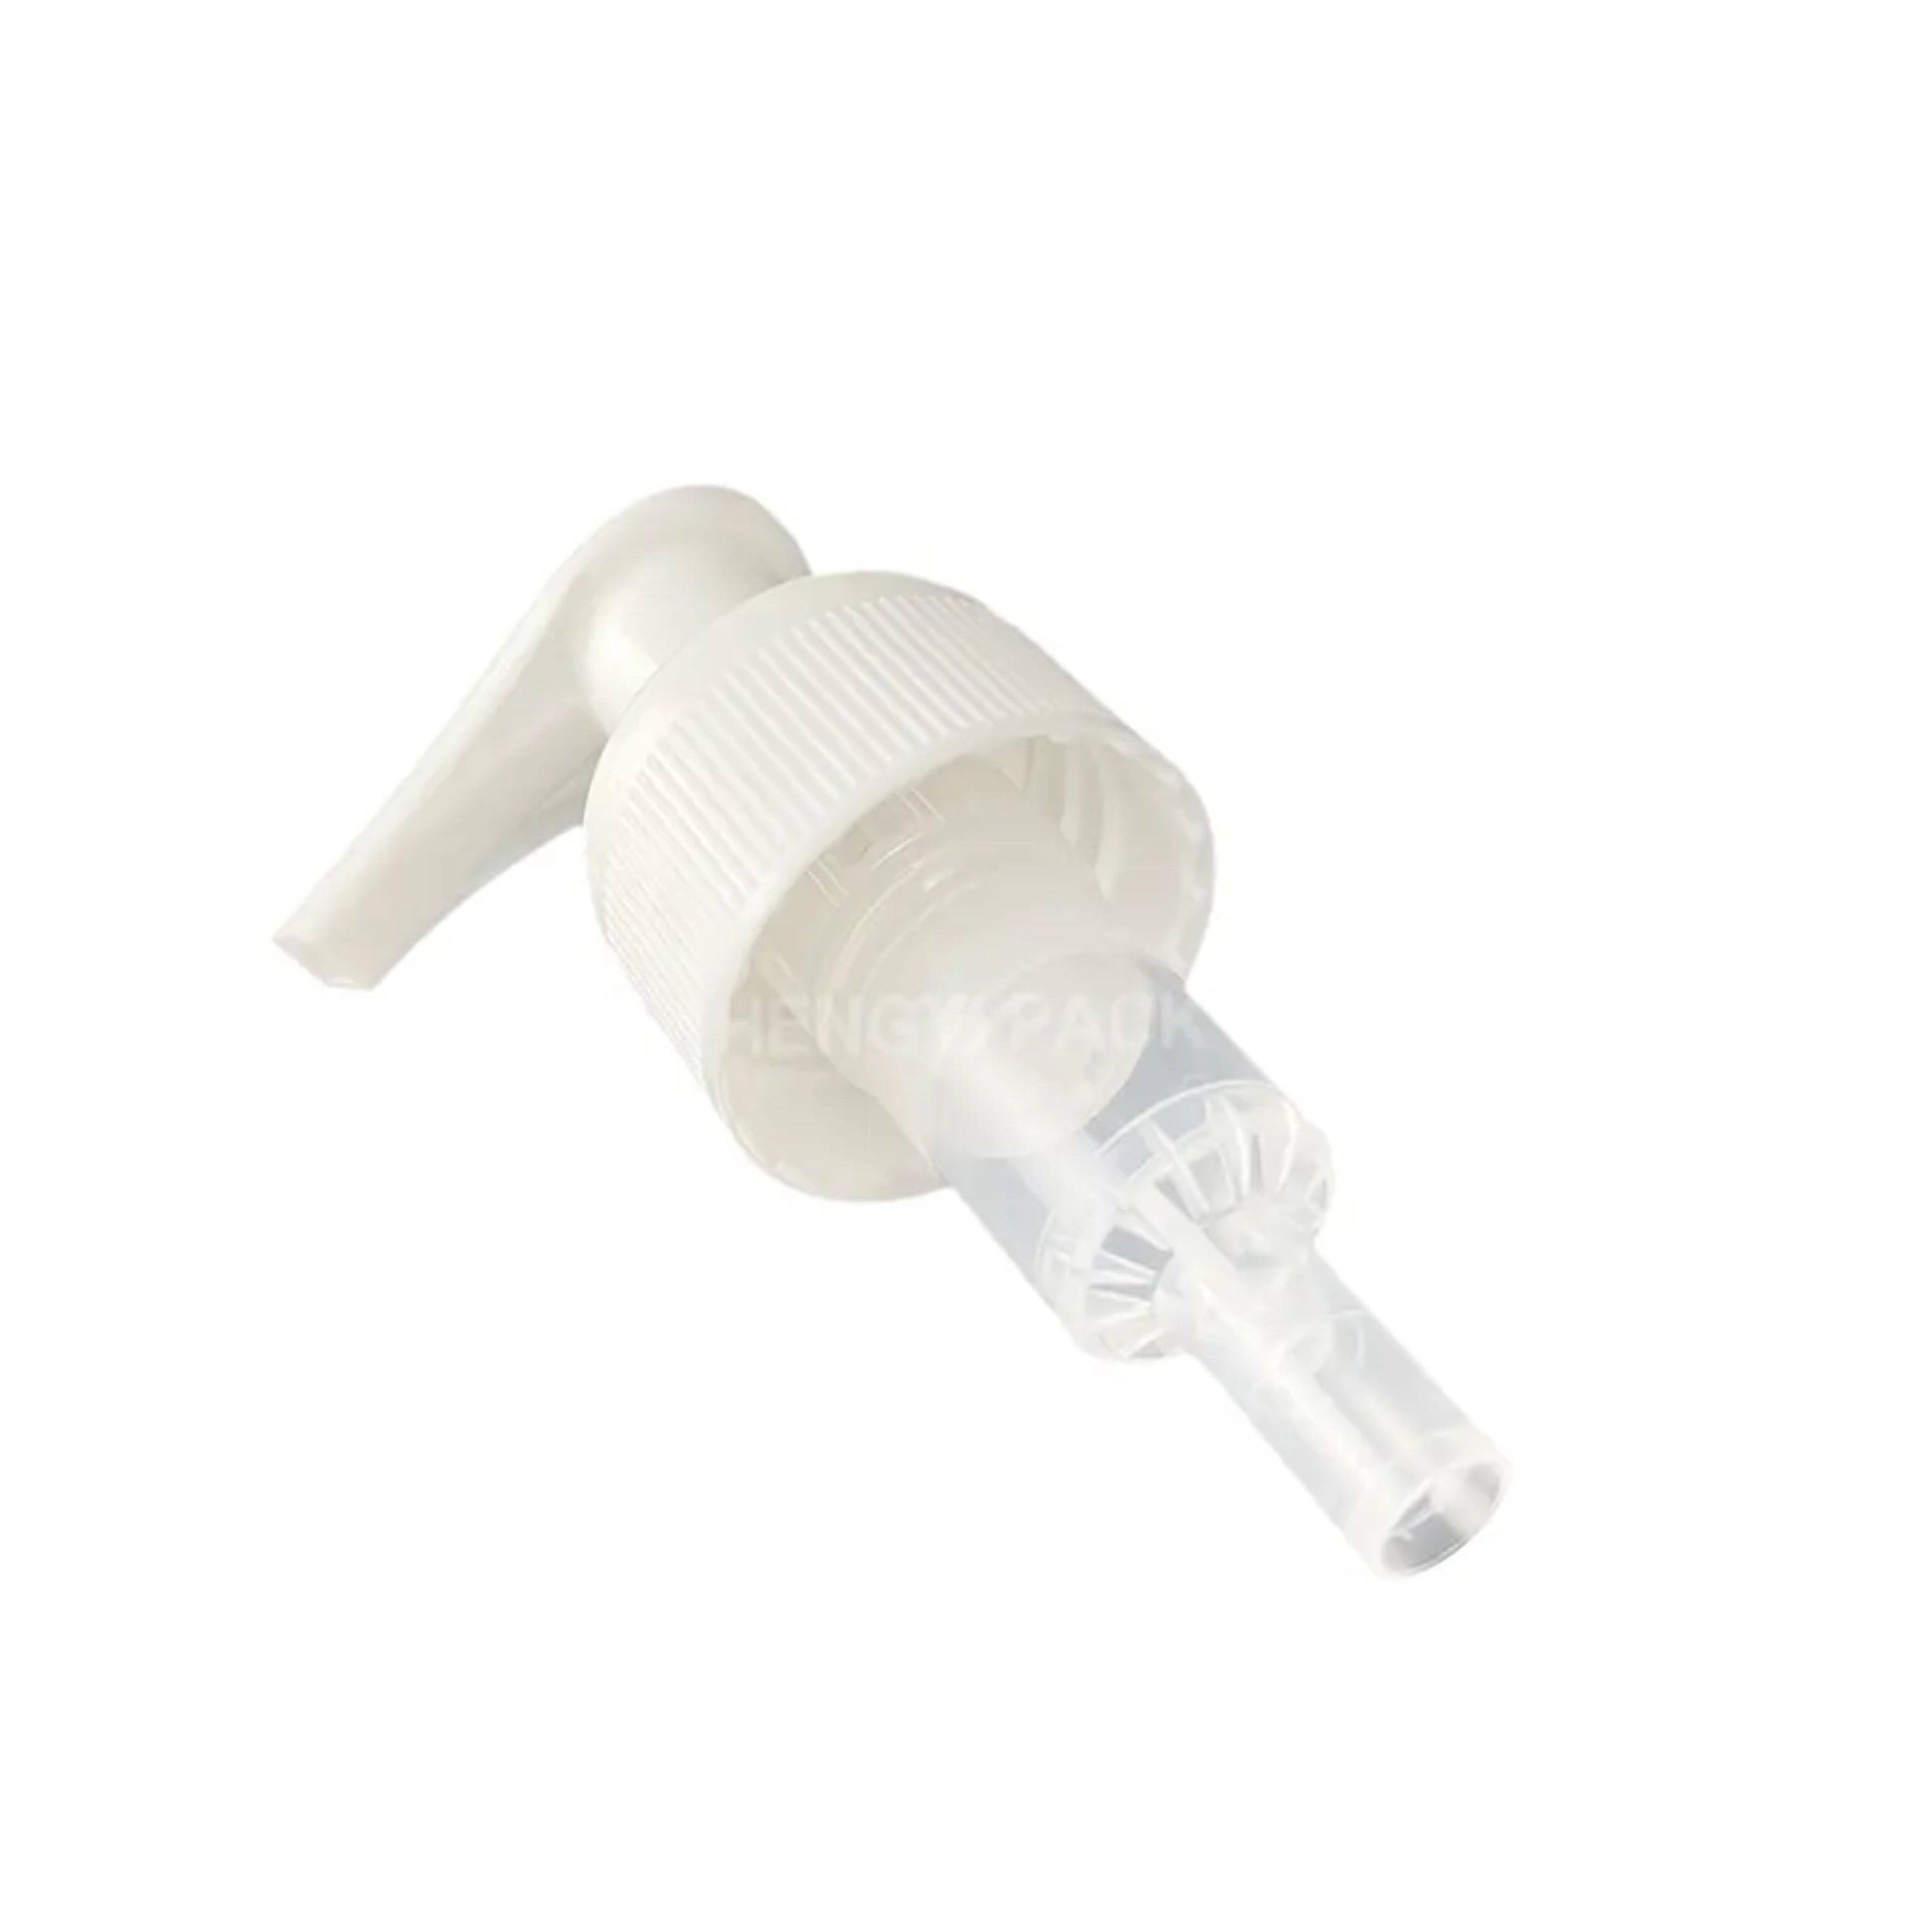 [ZMPC15] Beautiful White color dispenser Pump - 24mm Neck